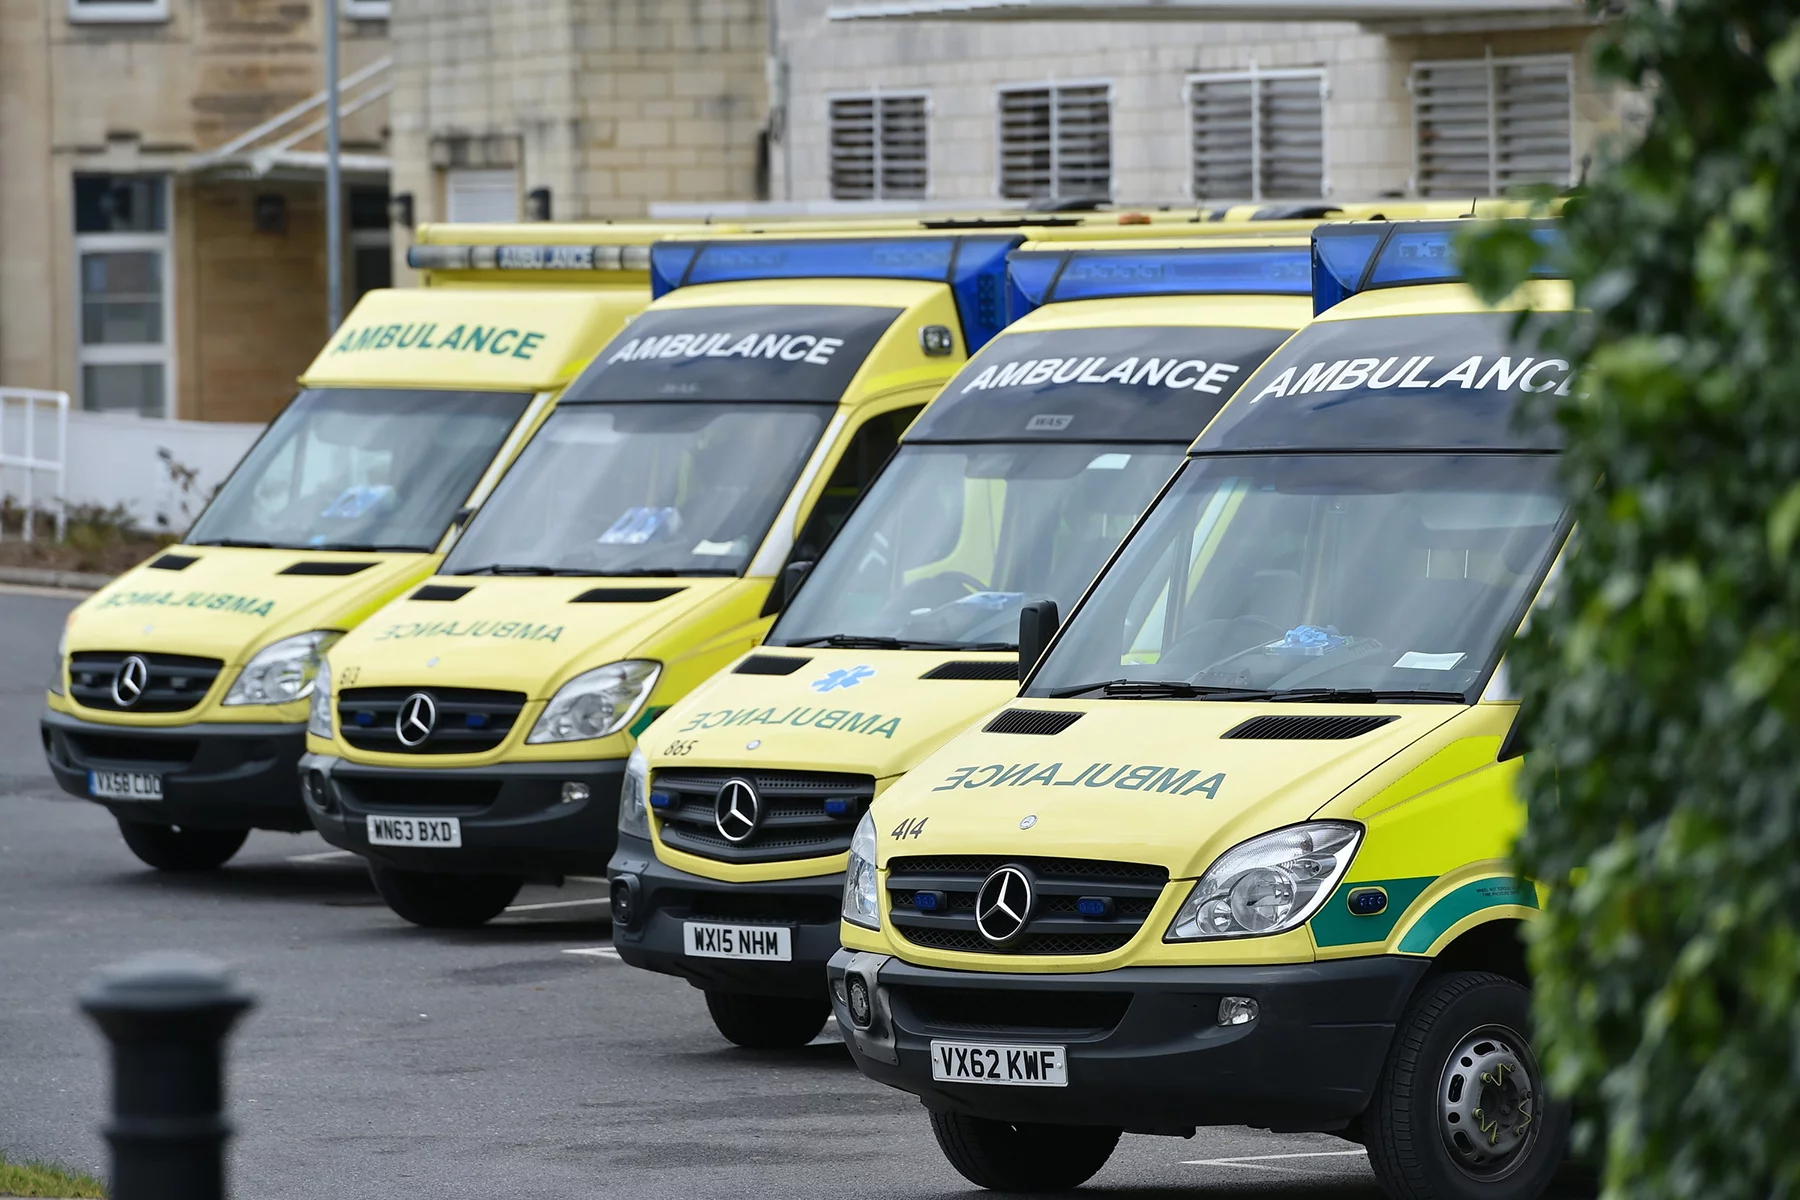 An ambulance fleet in Bath, UK